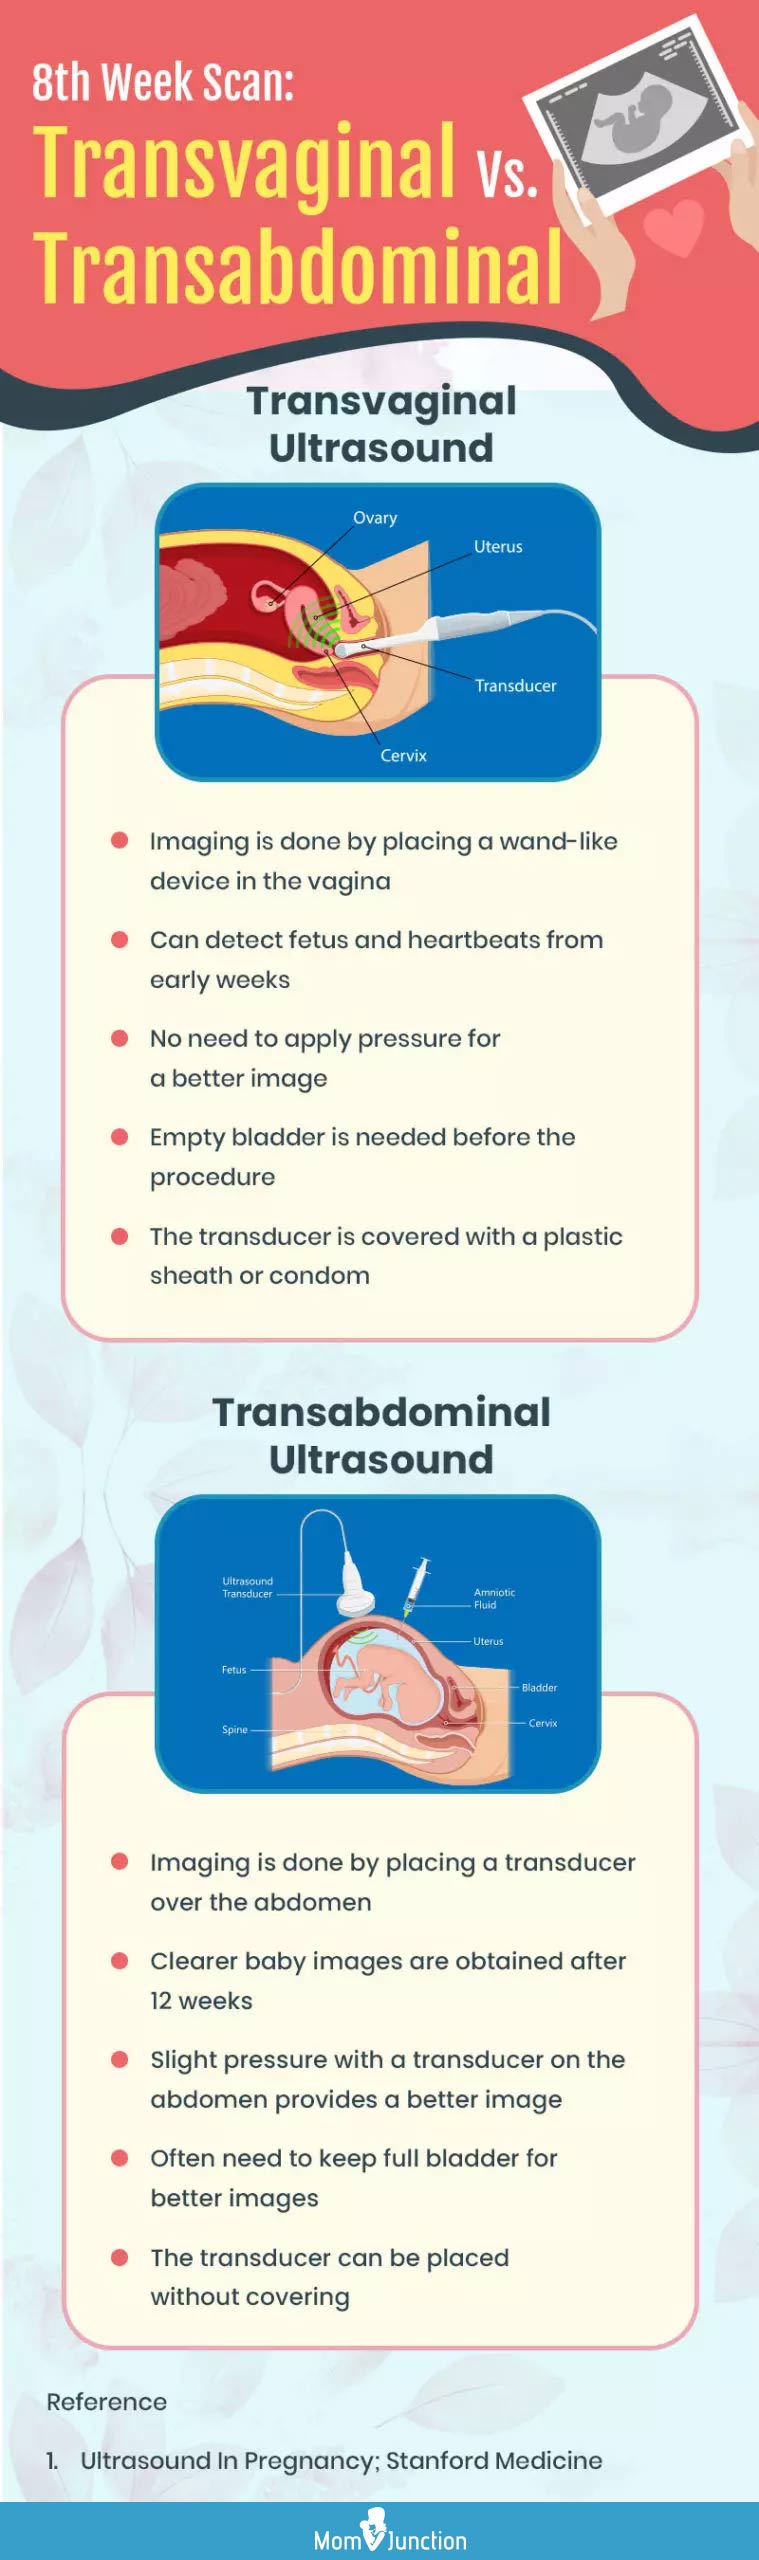 第8周经阴道或经腹部超声检查(信息图)